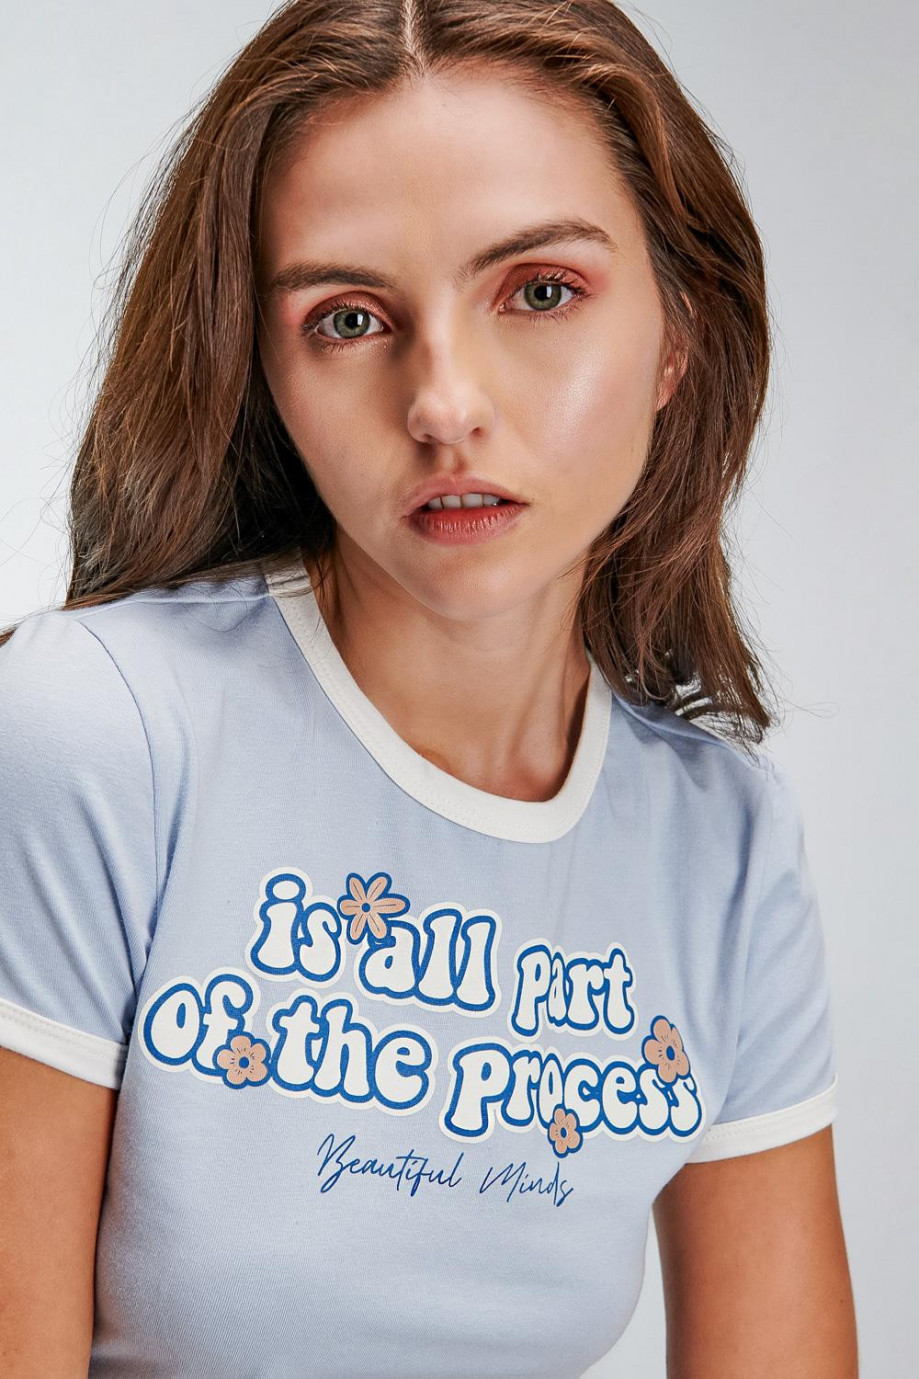 Camiseta unicolor manga corta con estampado de letras en frente